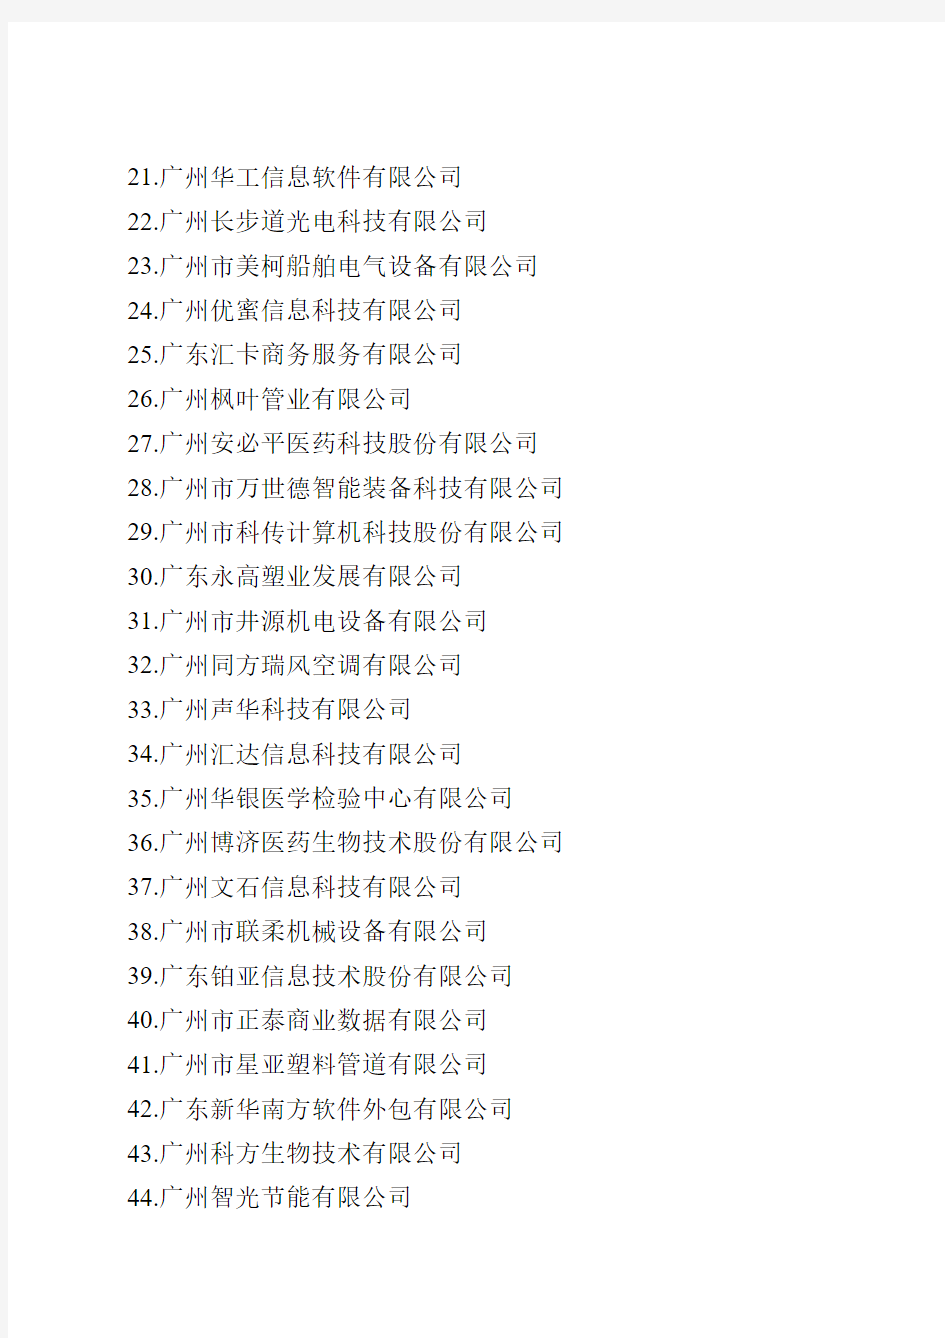 广州市第二批科技小巨人企业名单